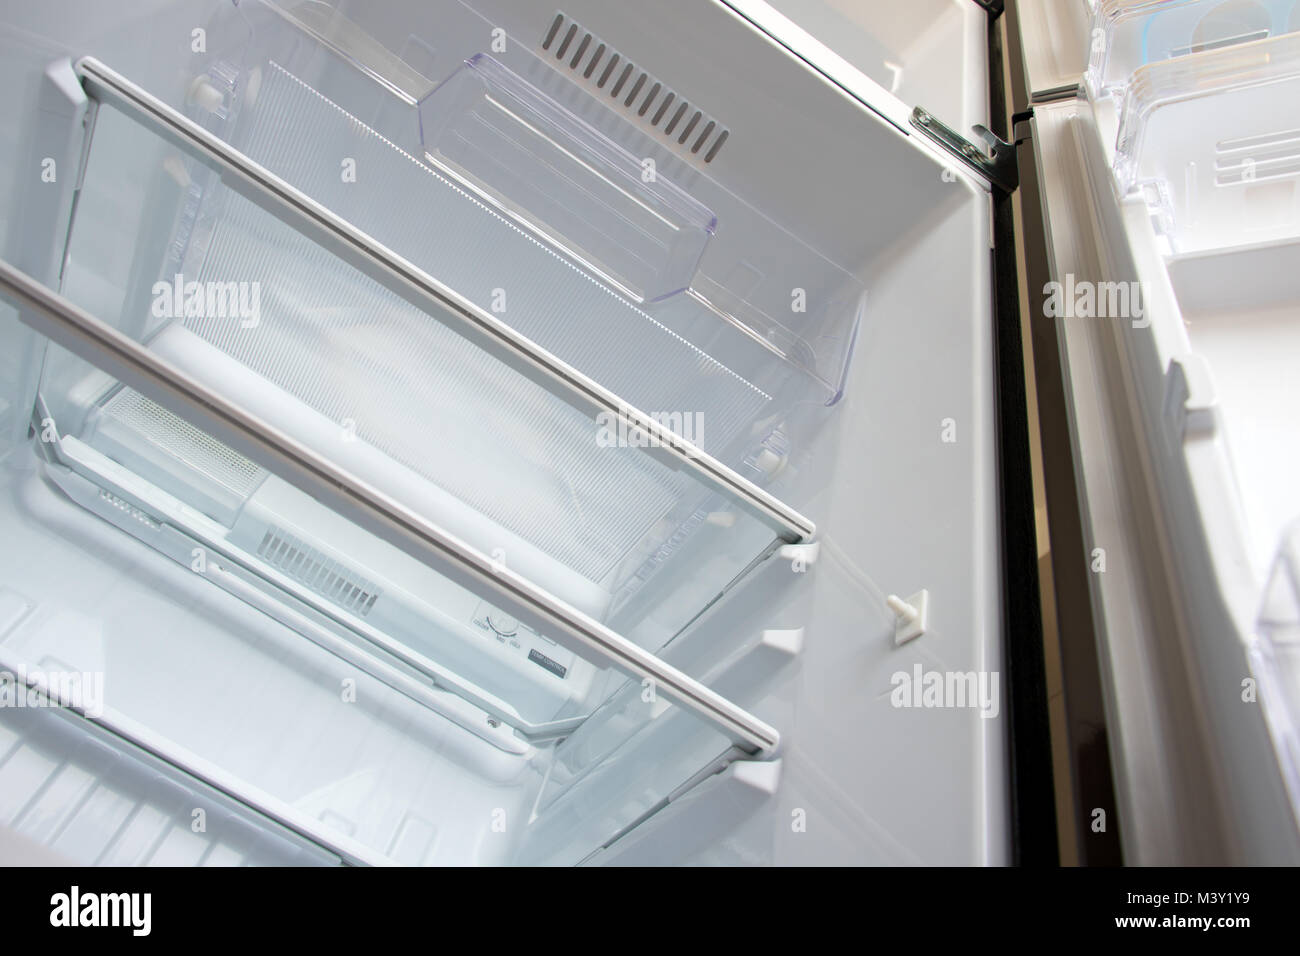 Open new fridge. Empty refrigerator with open door, view from below. Stock Photo